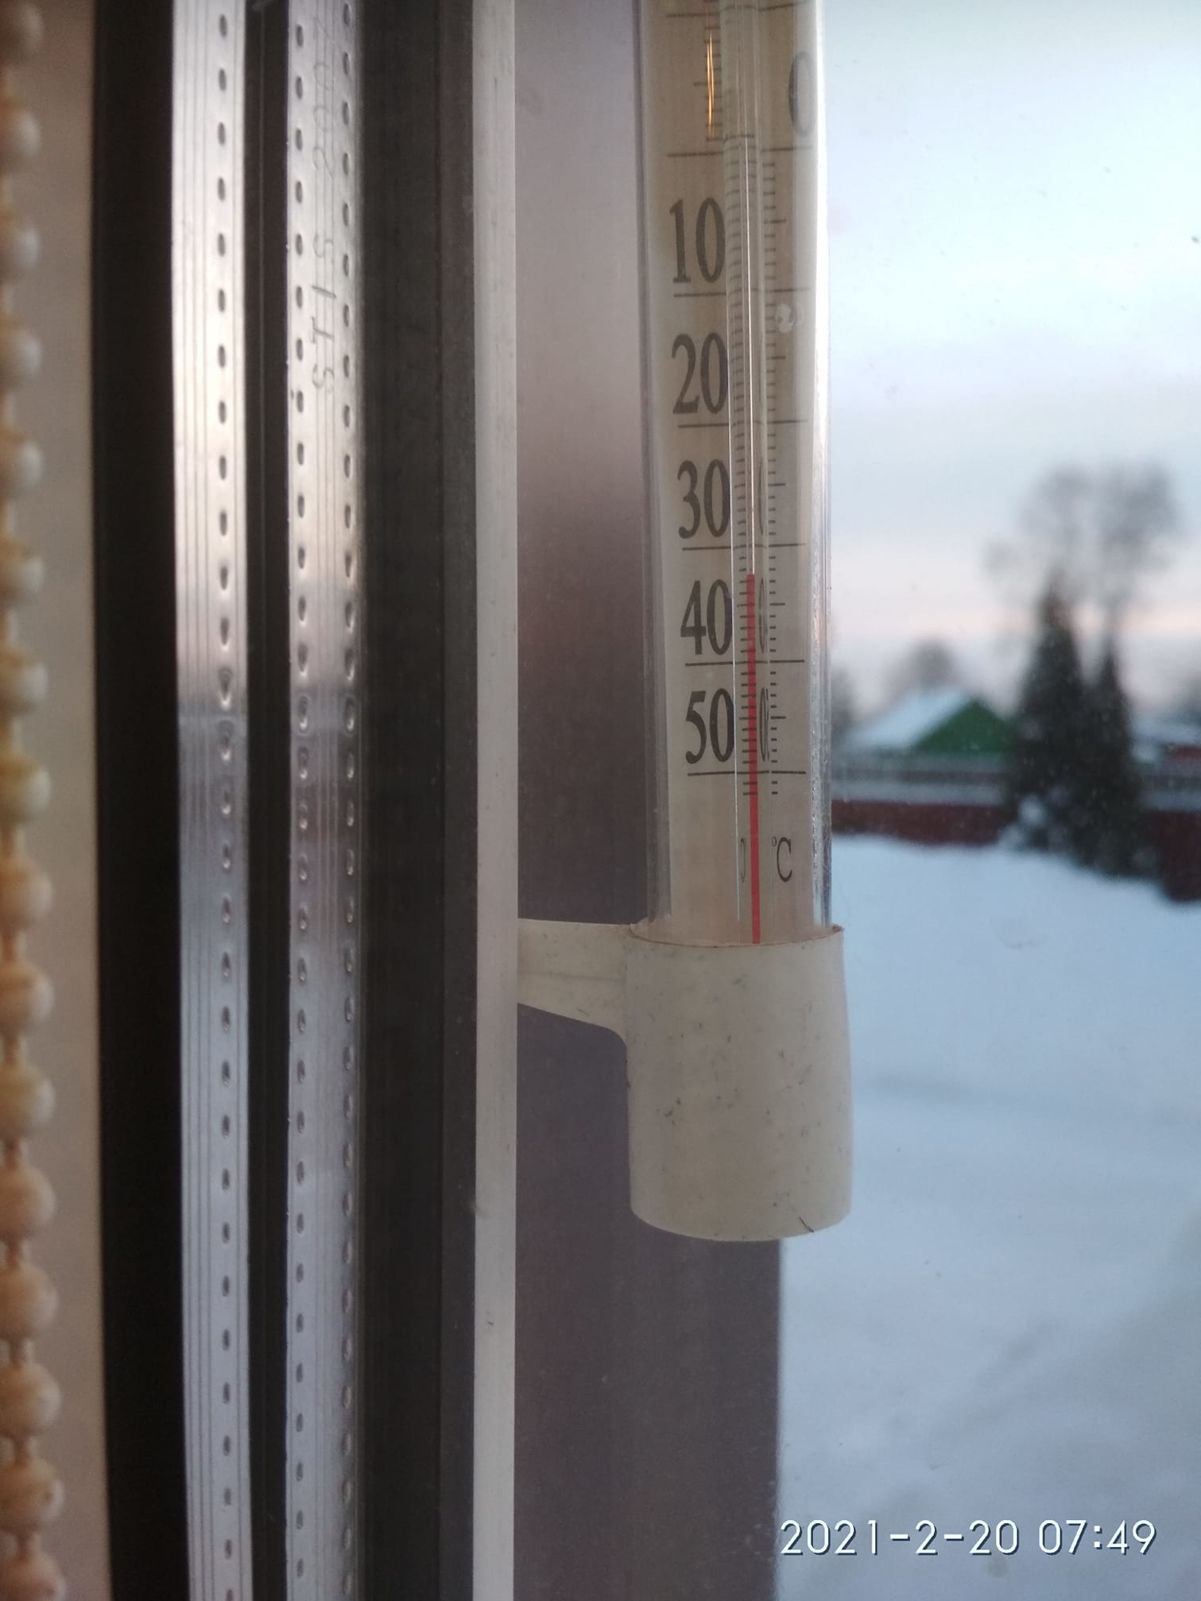 И это еще не предел: в Ярославской области температура опустилась до -39